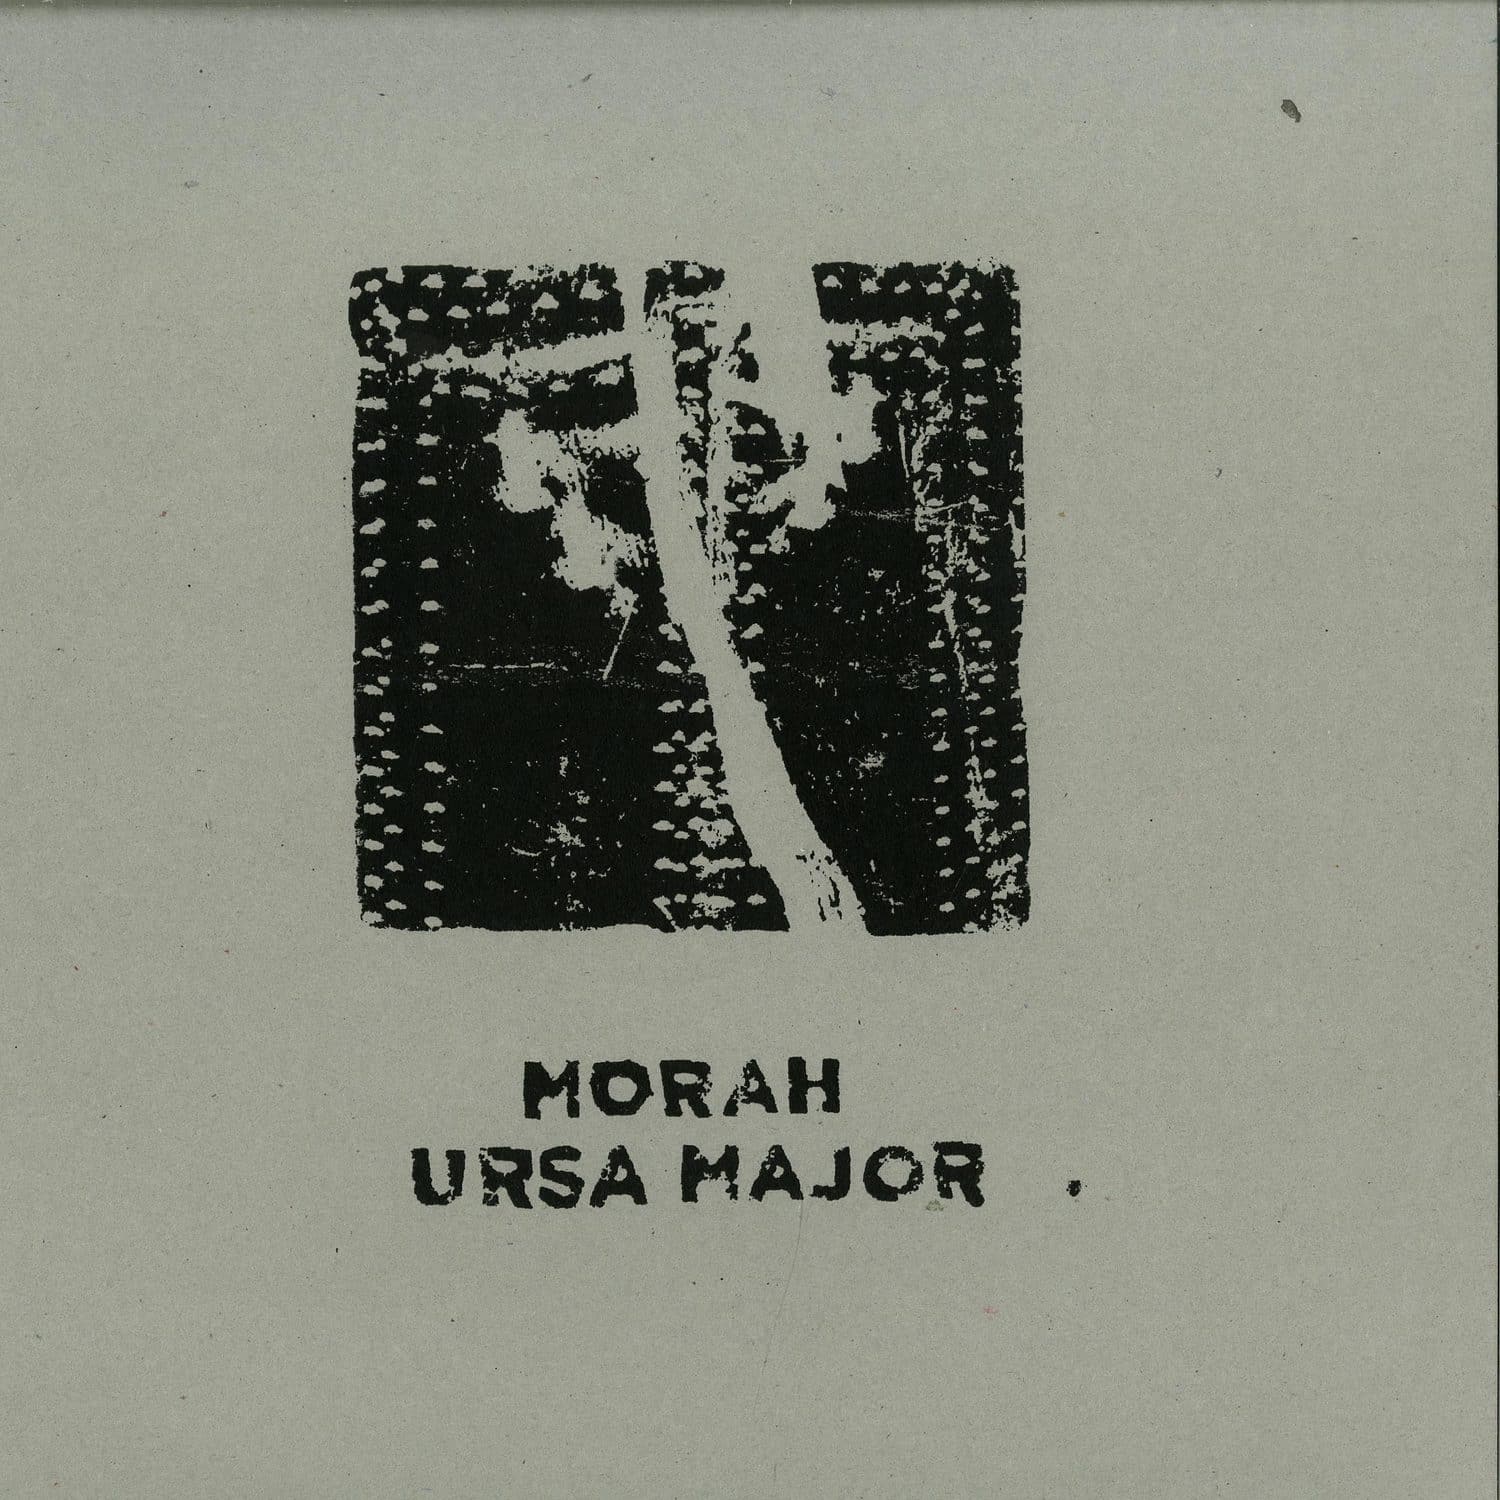 Morah - URSA MAJOR